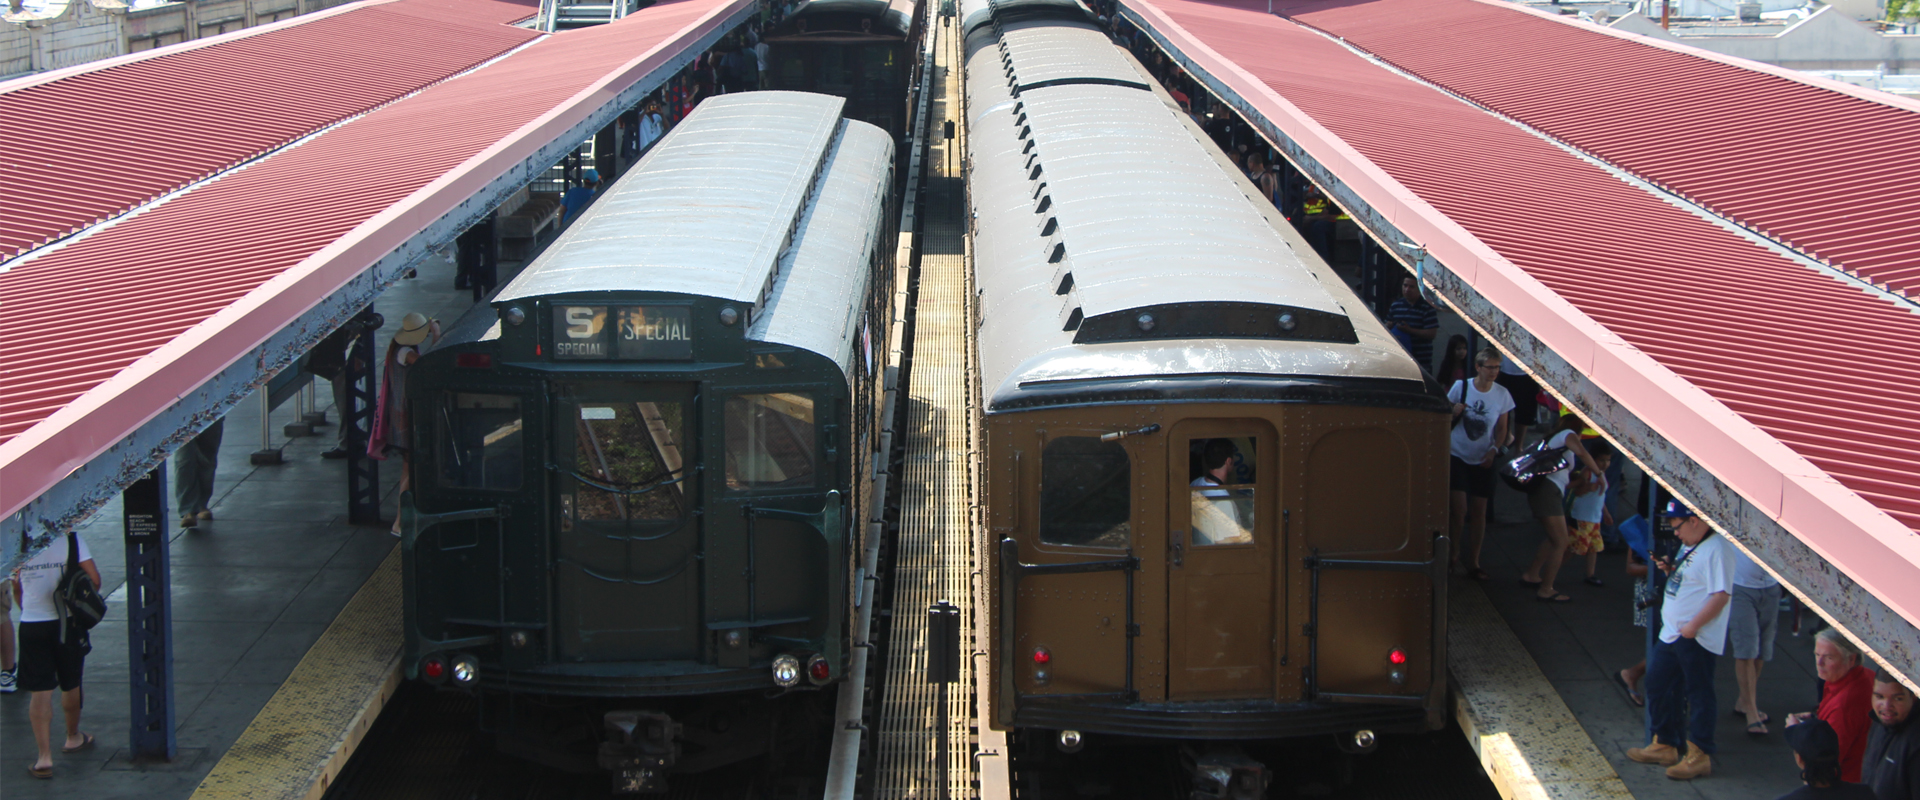 Parade of Trains